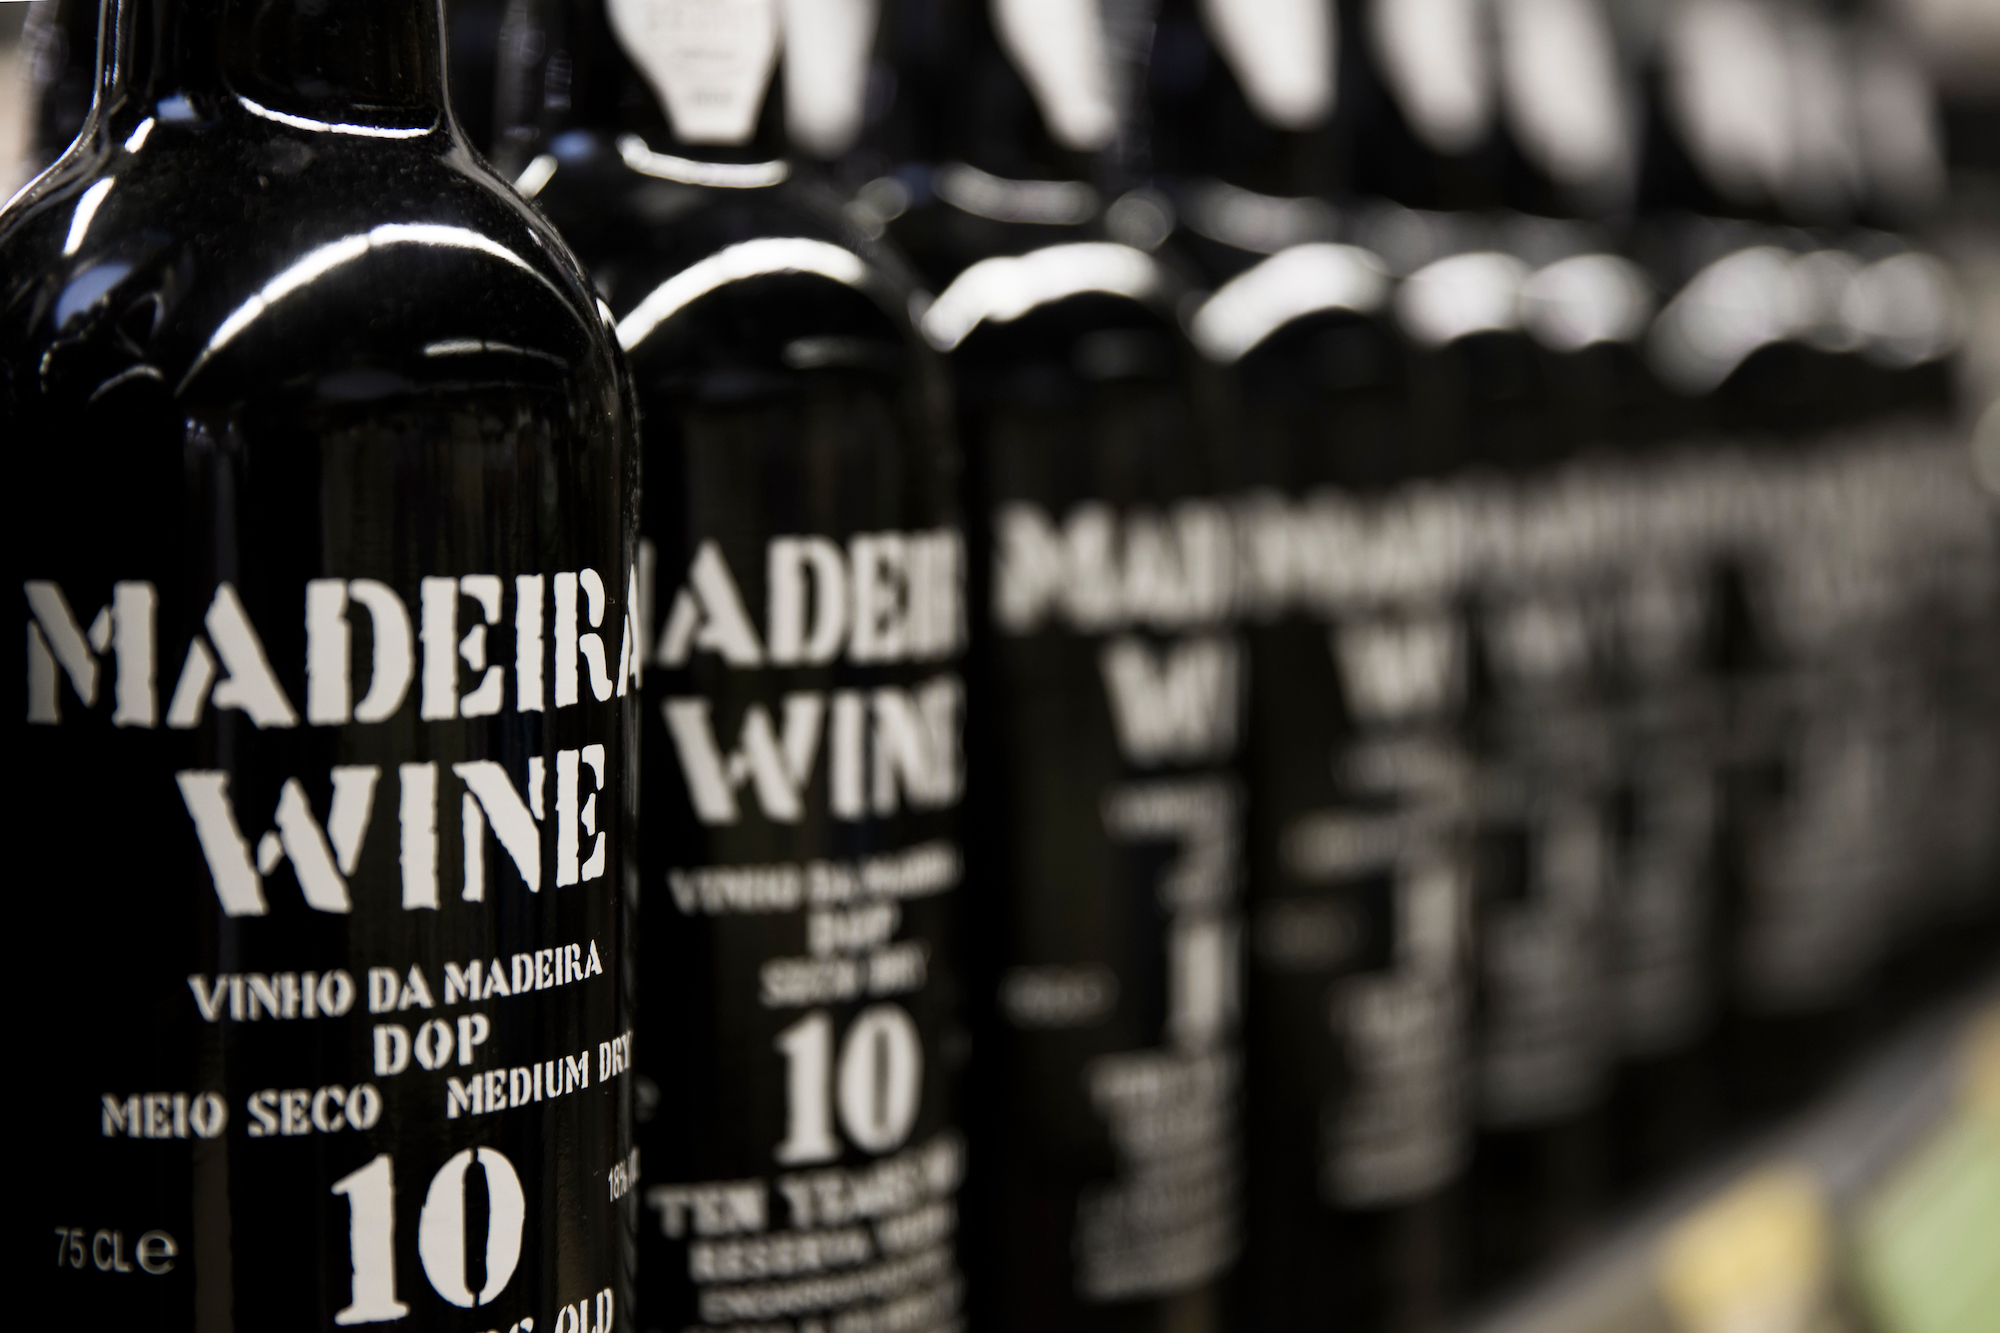 Madeira Wine bottles